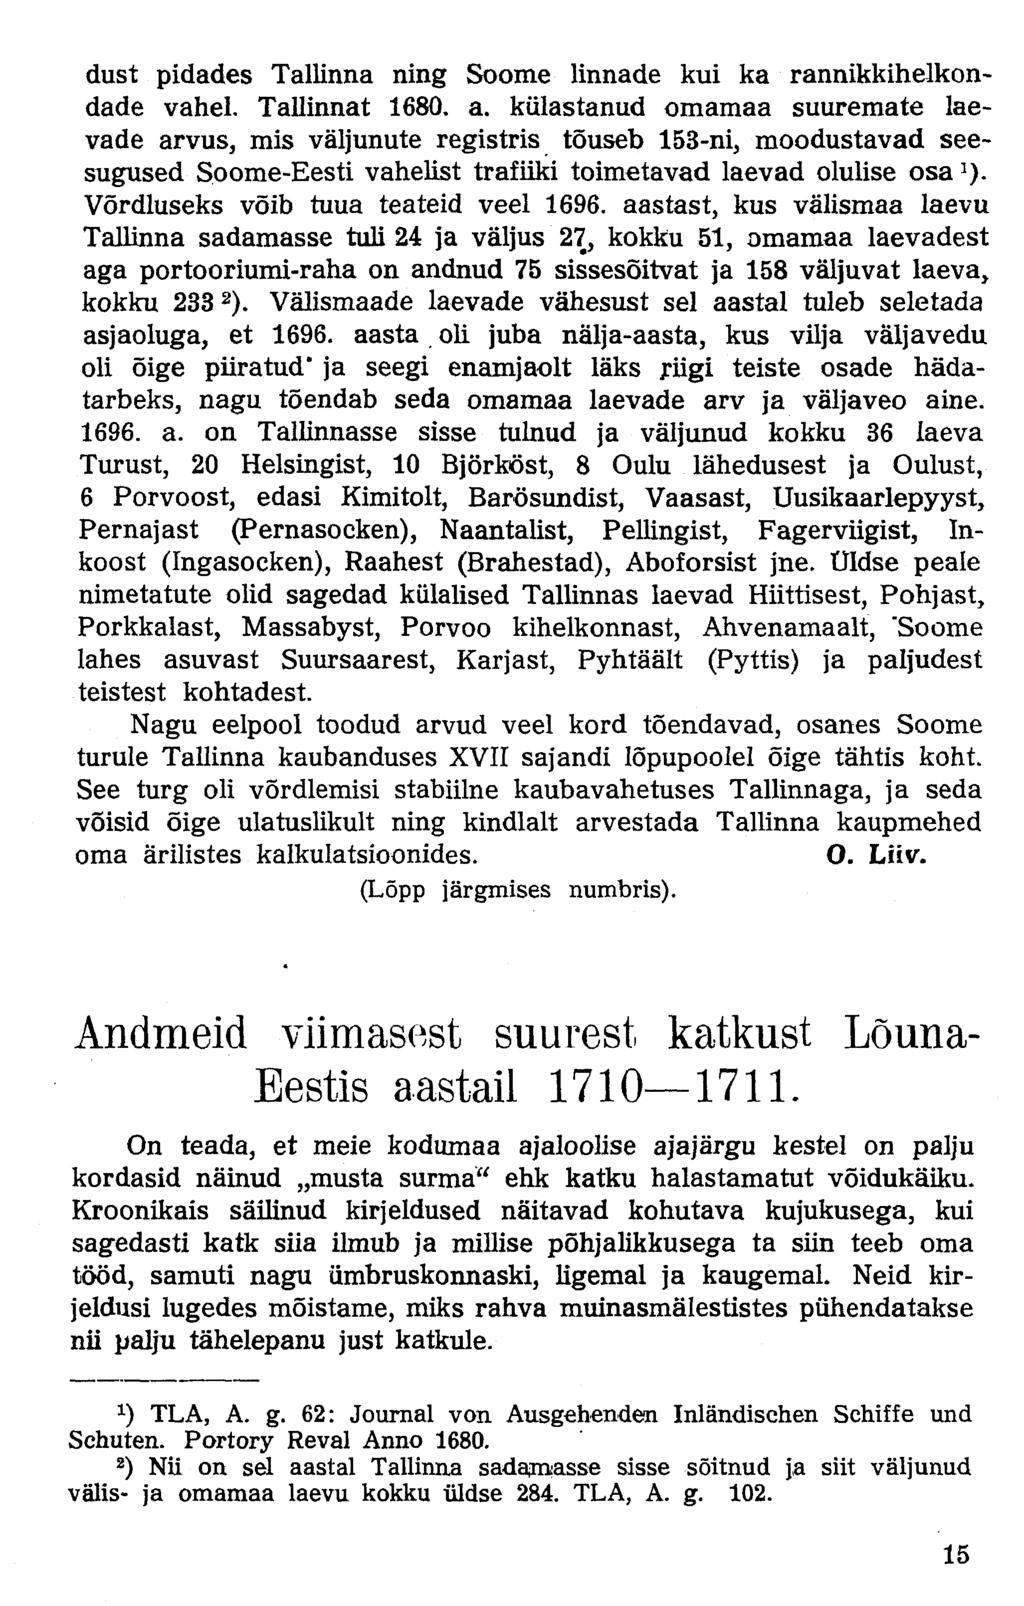 dust pidades Tallinna ning Soome linnade kui ka rannikkihelkondade vahel. Tallinnat 1680, a.